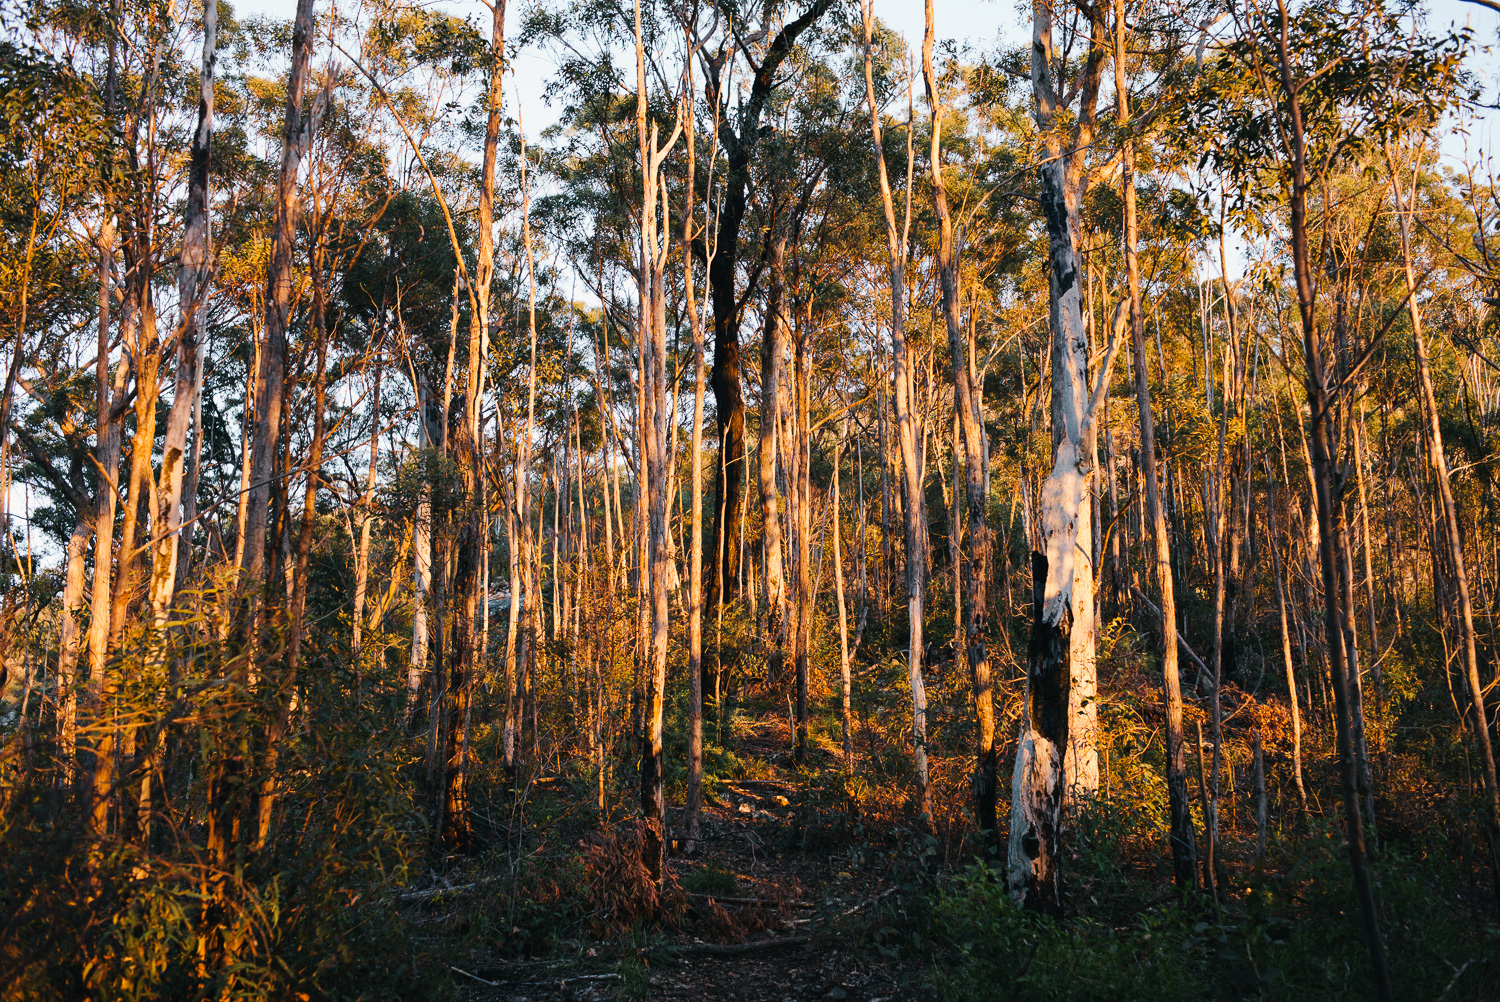 Nick-Bedford-Photographer-20160829_MtGreville_061423-Bushwalking, First Light, Hiking, Leica M Typ 240, Mount Greville, Mountains, Queensland, Summarit 35mm, Sunrise, VSCO Film.jpg